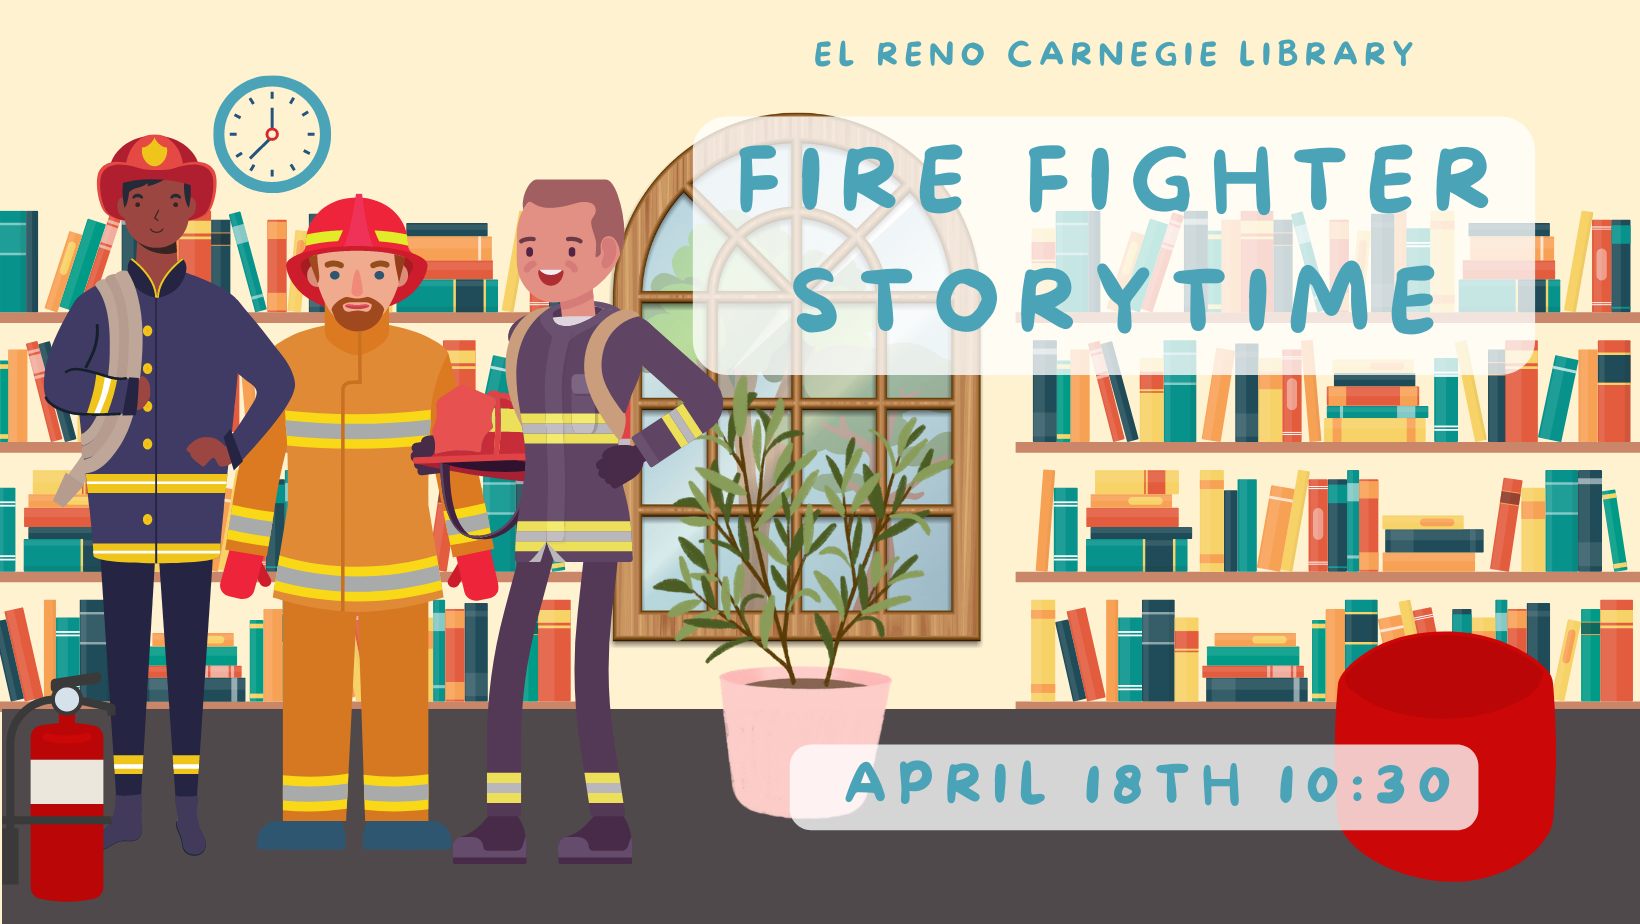 Firefighter Storytime